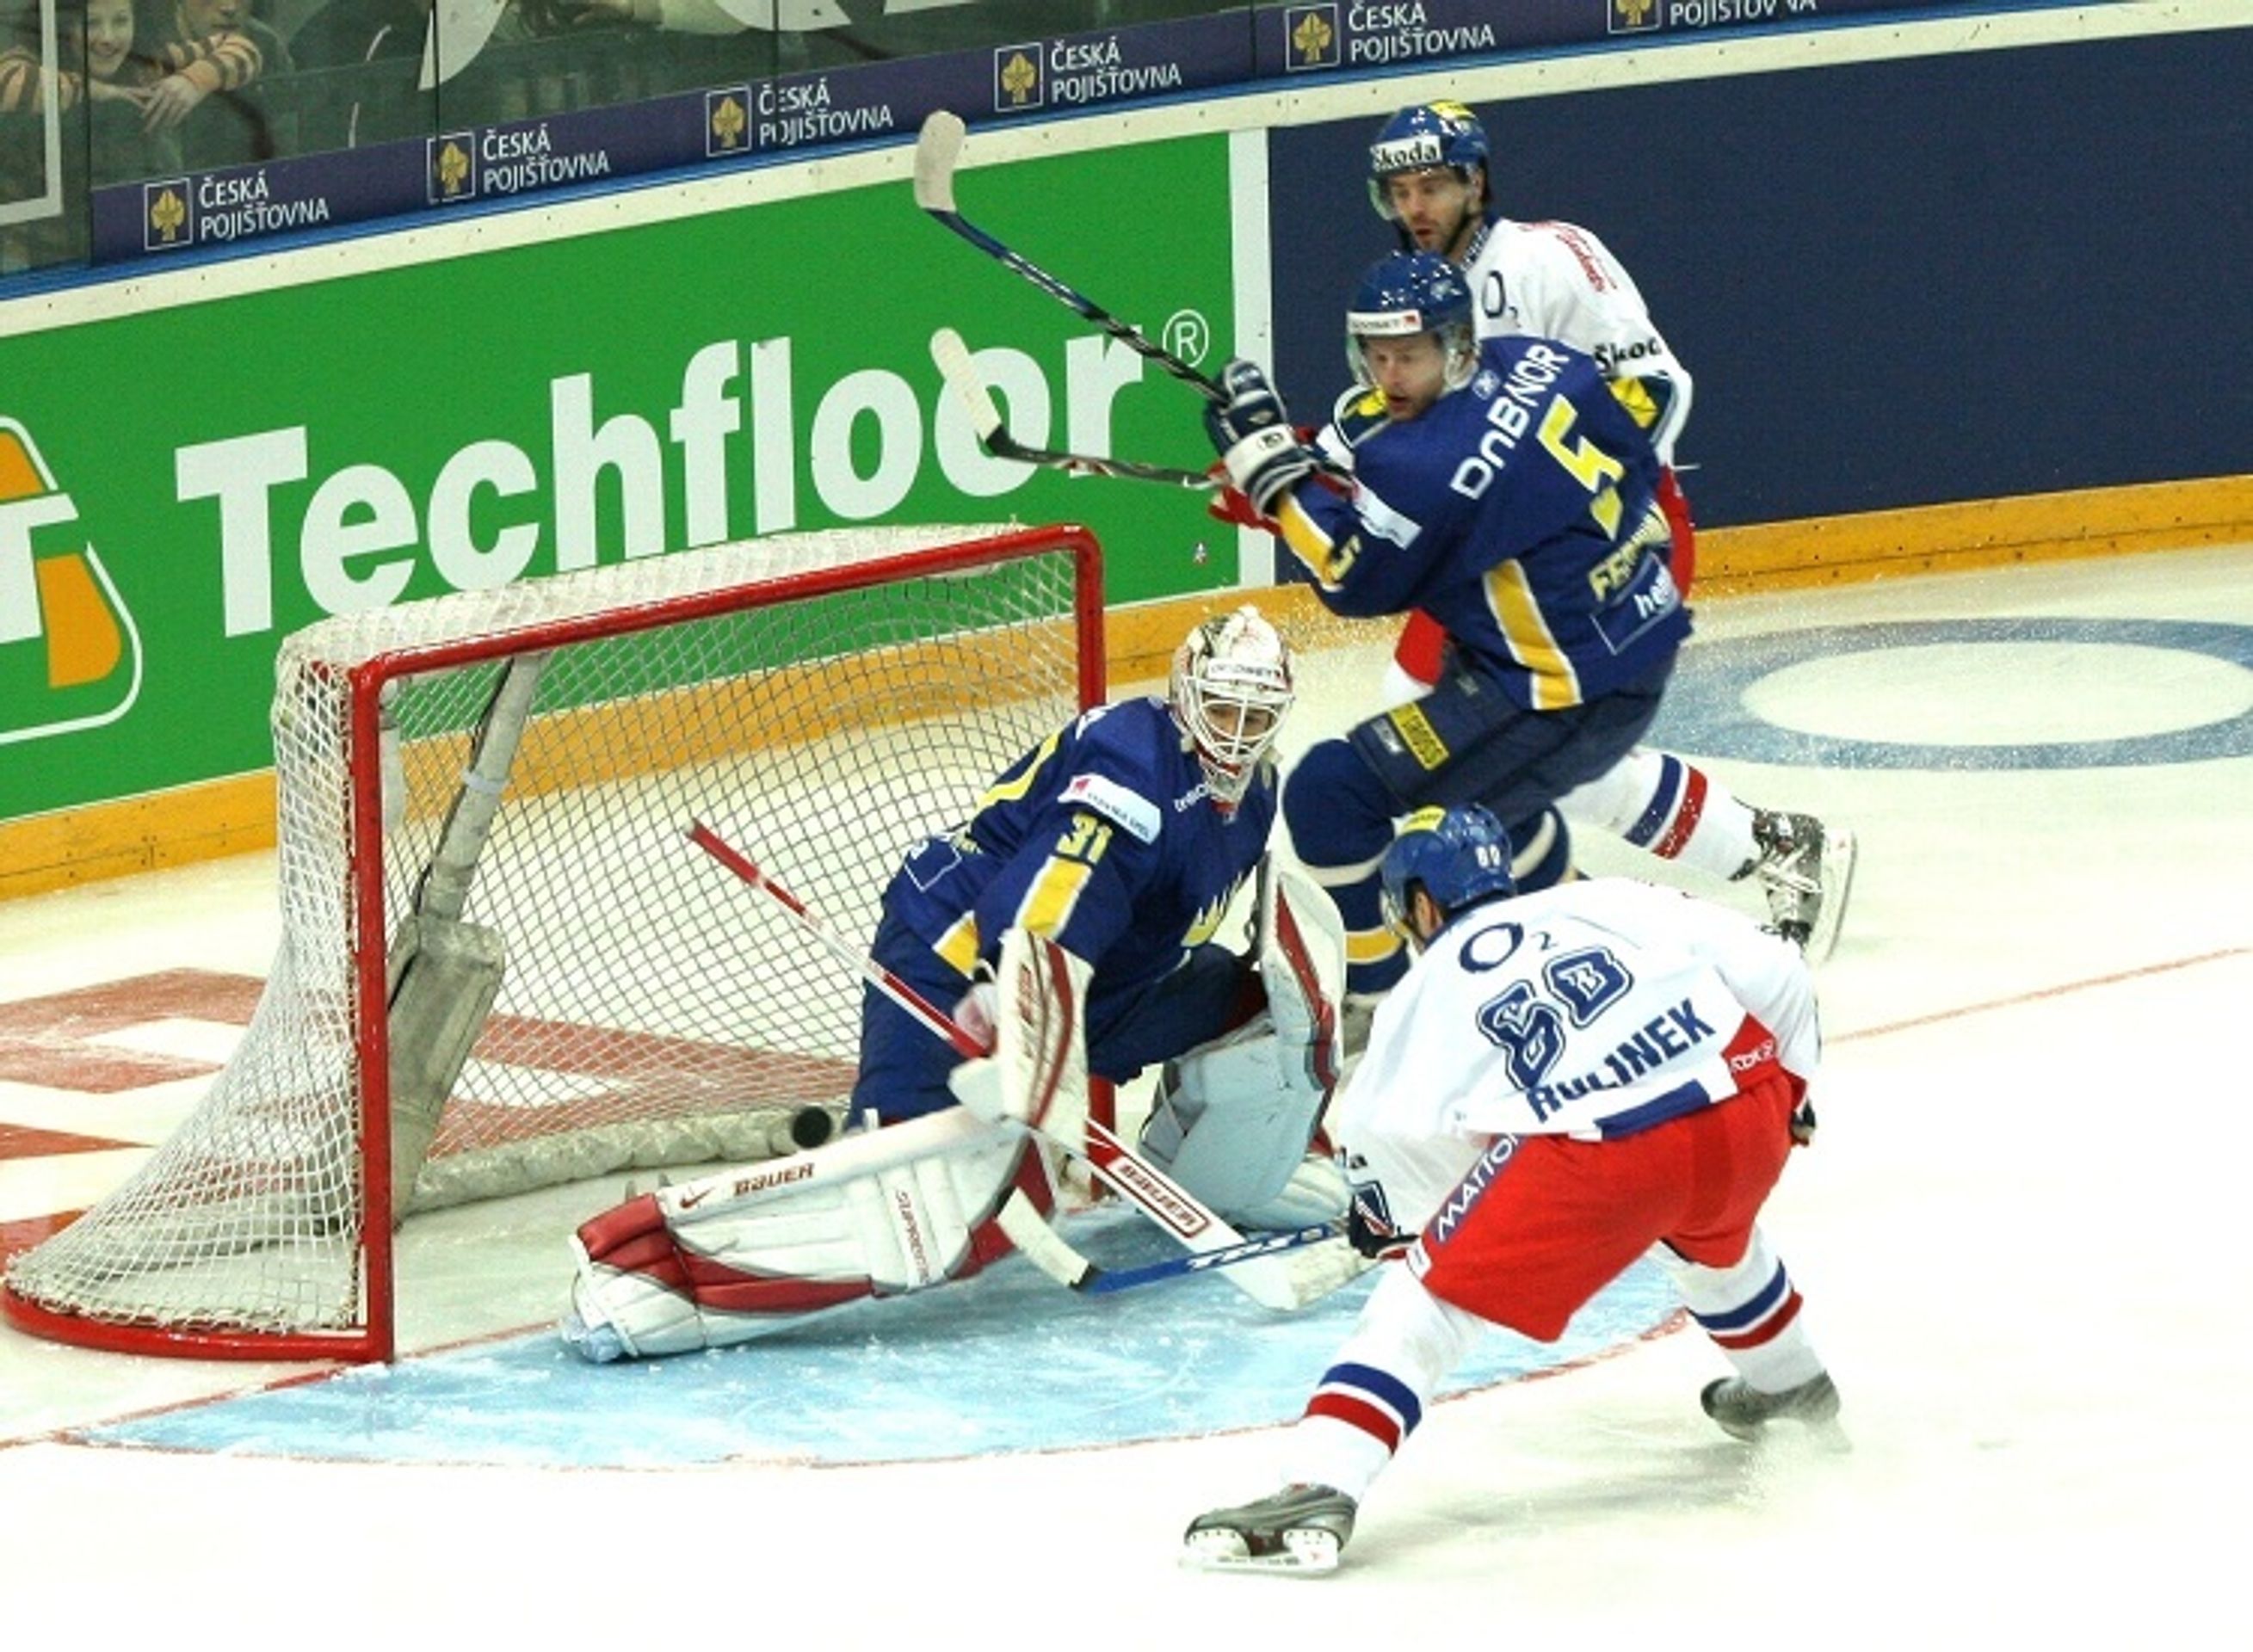 Česká Republika - Švédsko 5:4, gól na 1:0 střílí Rolinek - Čeští hokejisté přehráli těsně Švédsko 5:4 (1/5)